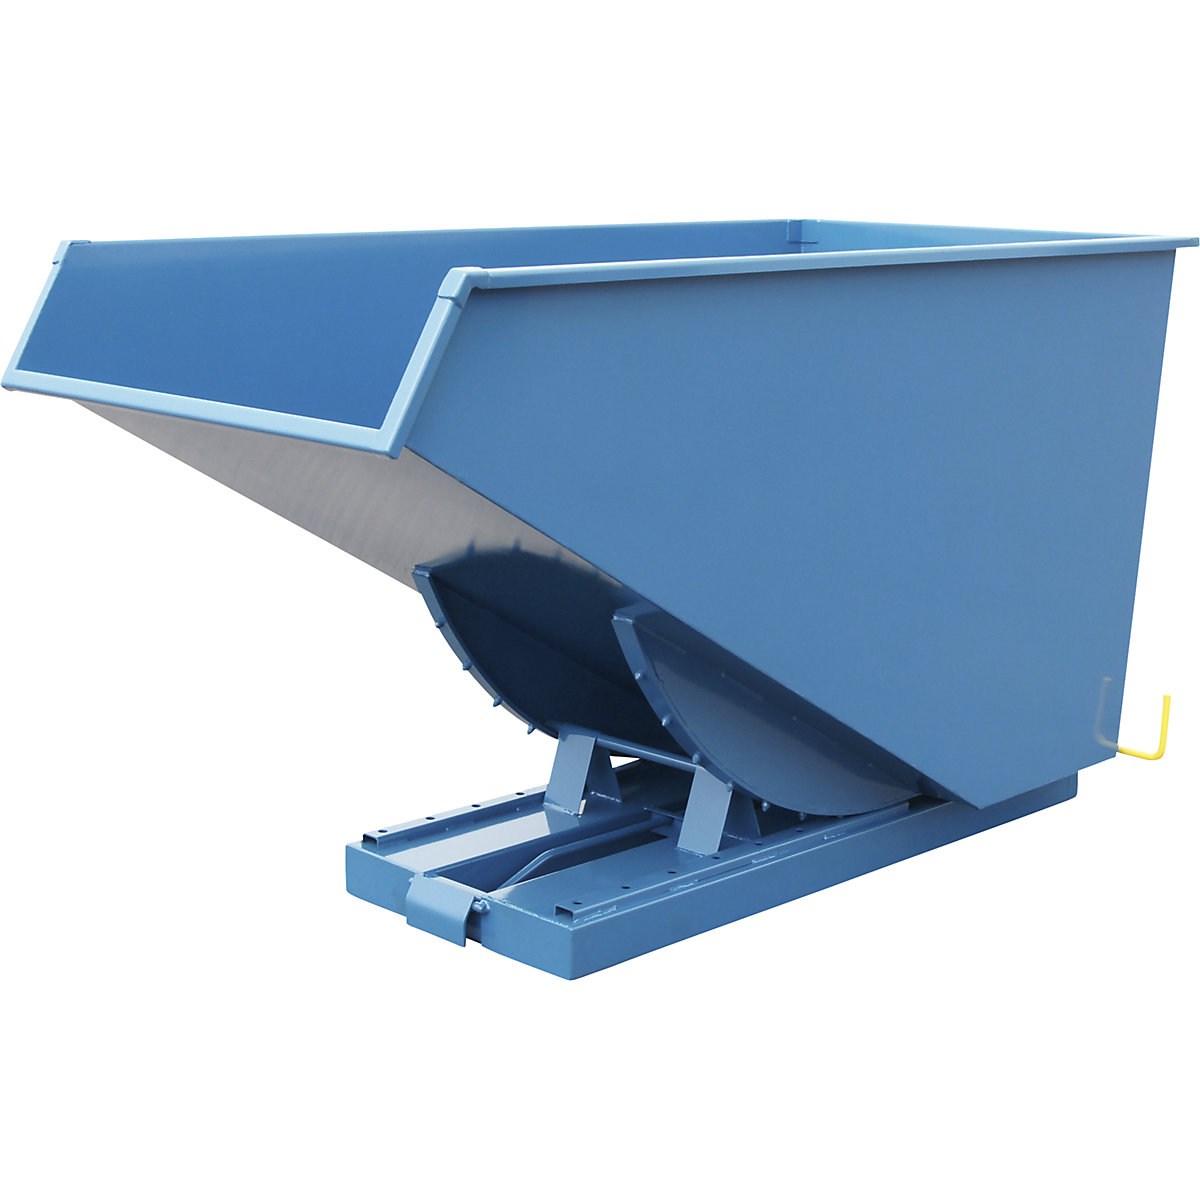 Benne basculante pour charges lourdes, force 2500 kg, bleu, capacité 1,6 m³-5